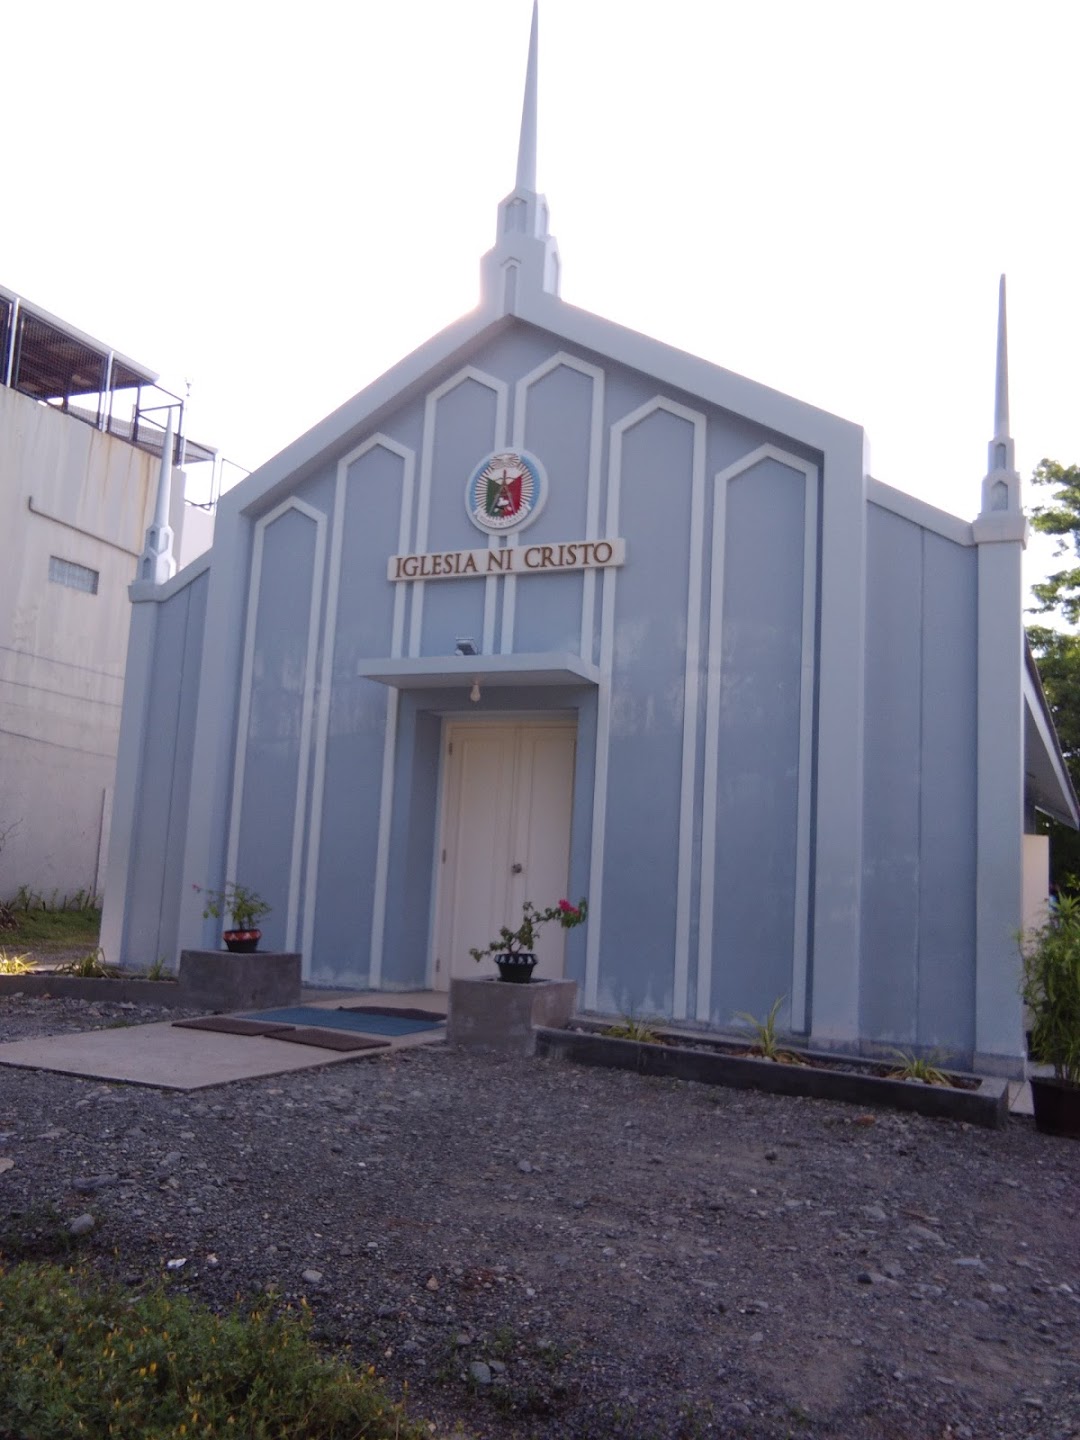 Iglesia Ni Cristo - Lokal ng Anda